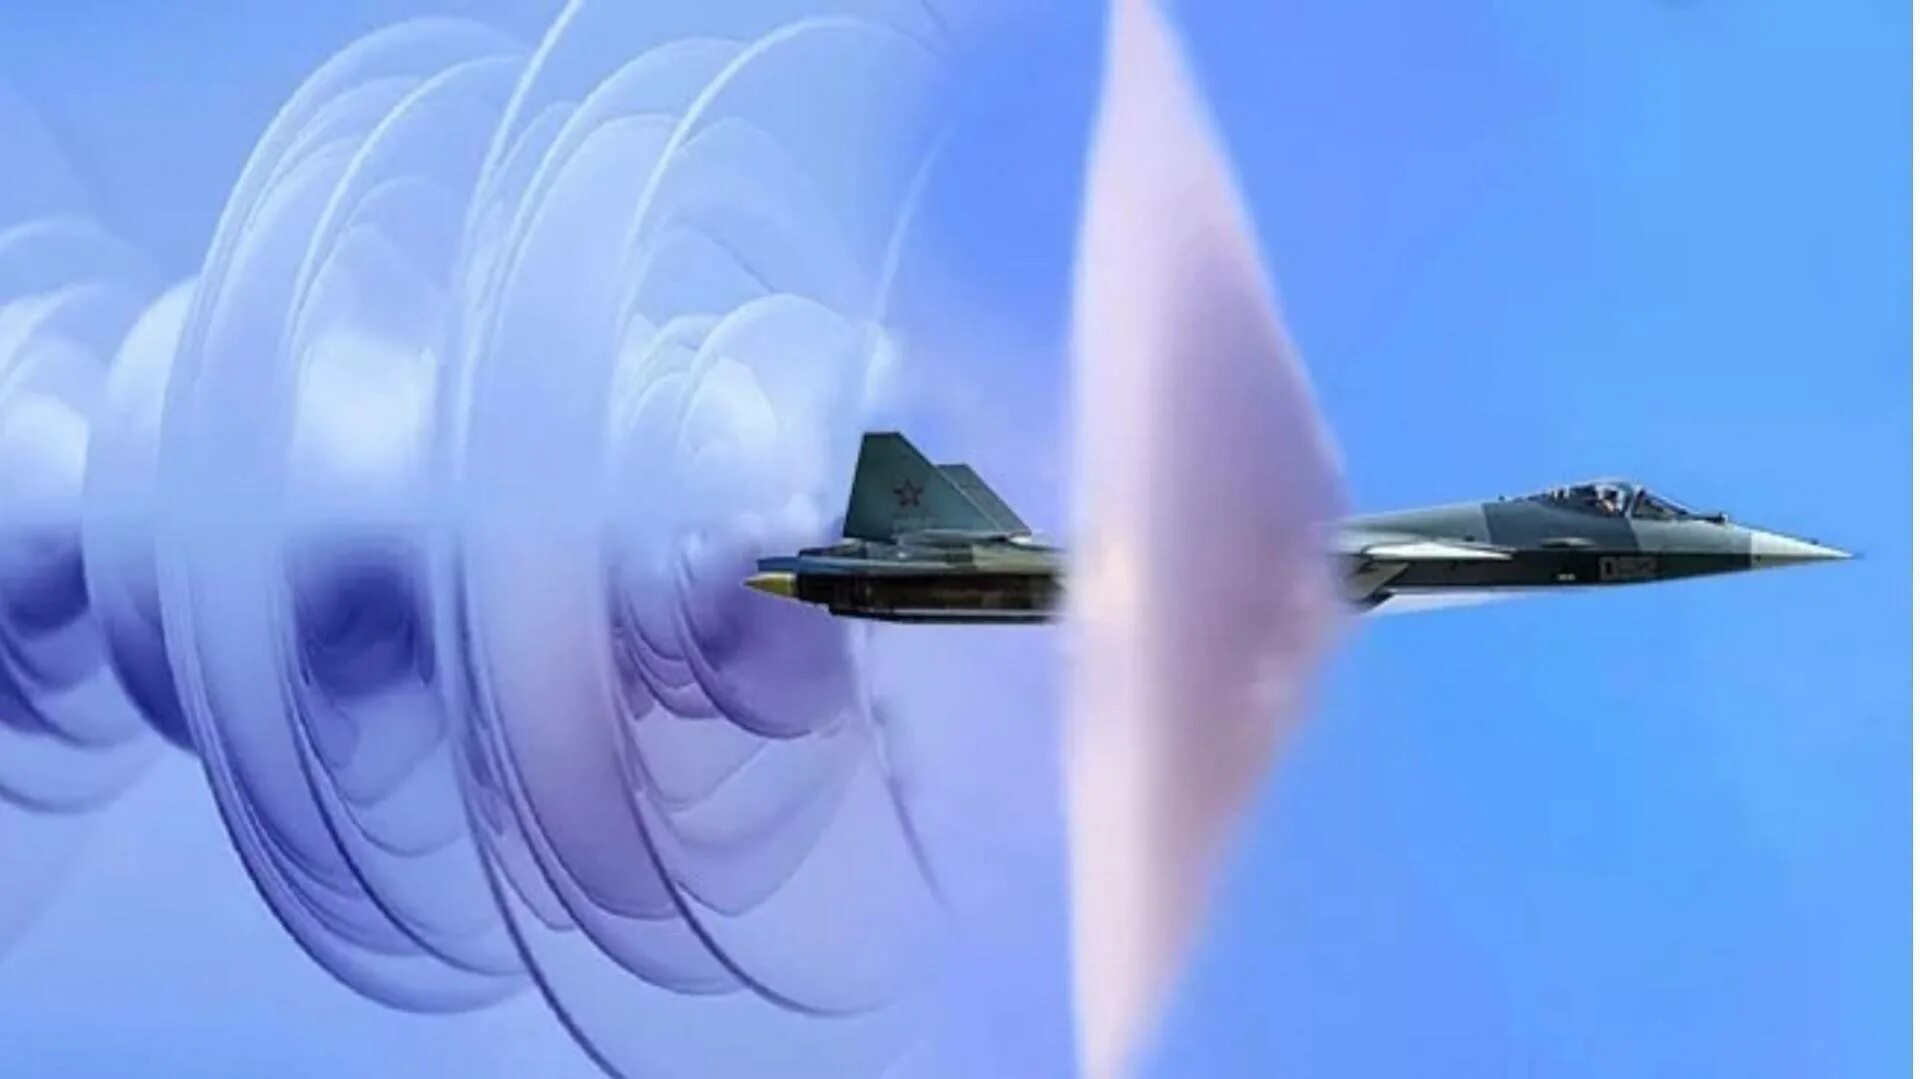 Звук воздуха для перехода. Эффект Прандтля Глоерта Су-57. Су 27 звуковой барьер. Су-57 преодоление звукового барьера. Скорости звука сверхзвук гиперзвук.